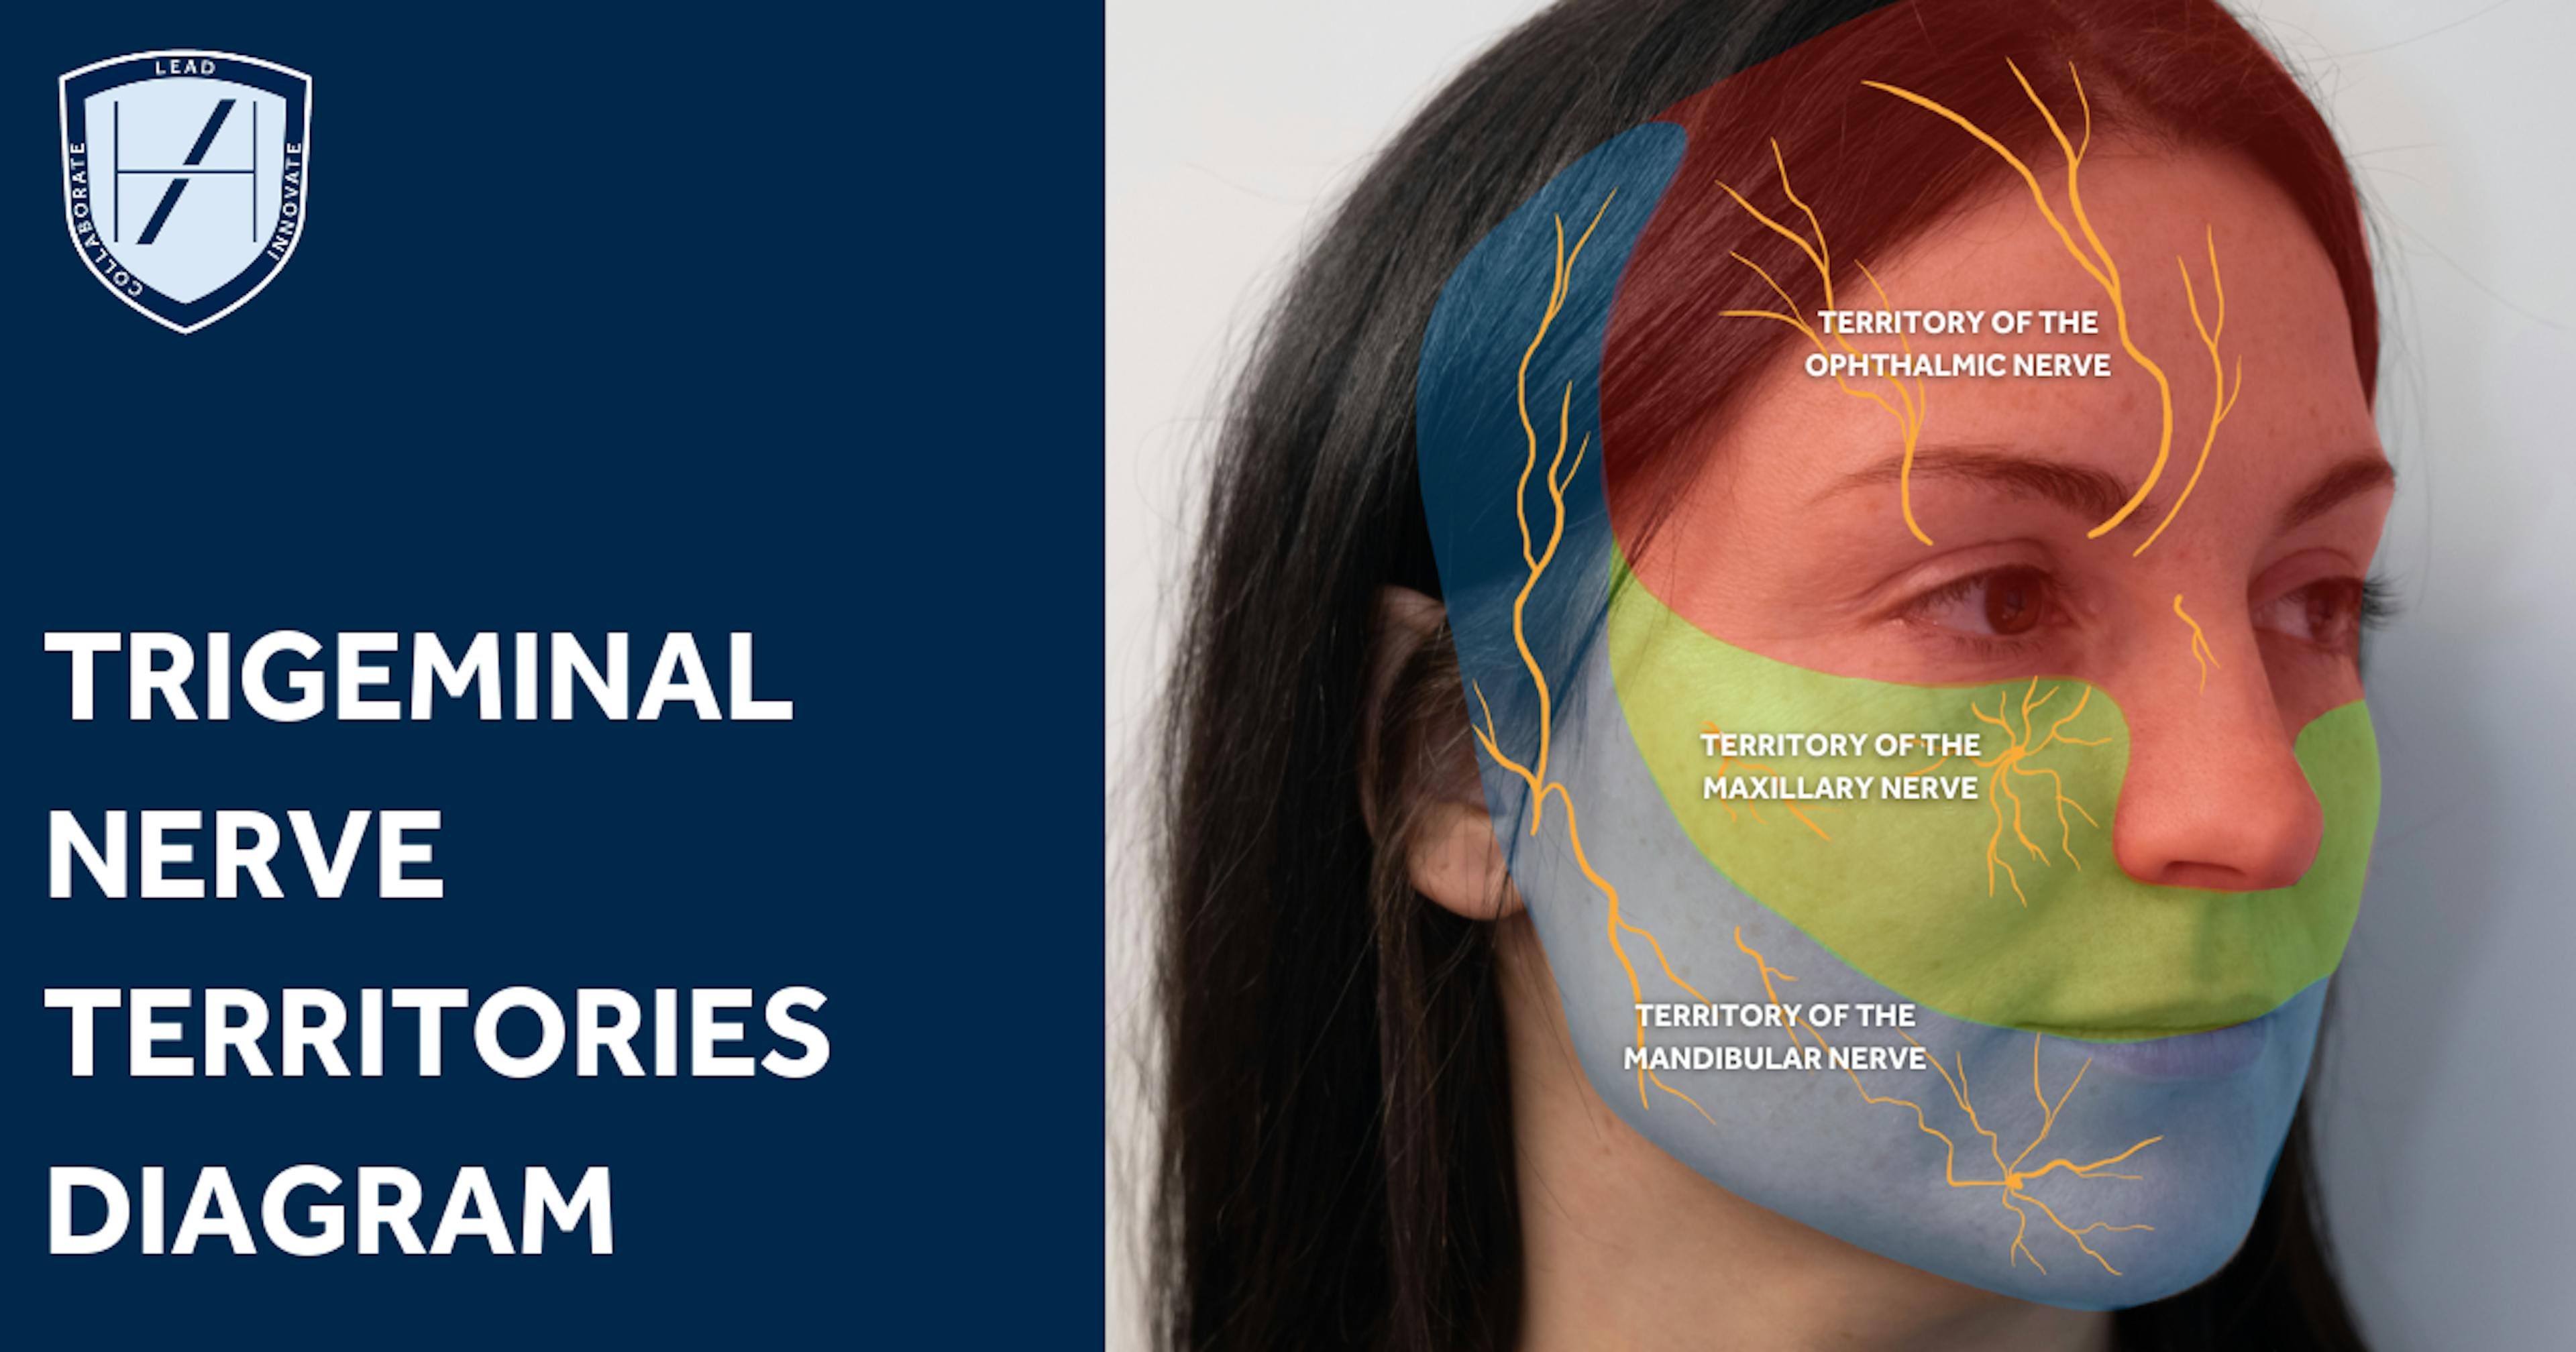 TRIGEMINAL NERVE TERRITORIES diagram for nerve damage after fillers